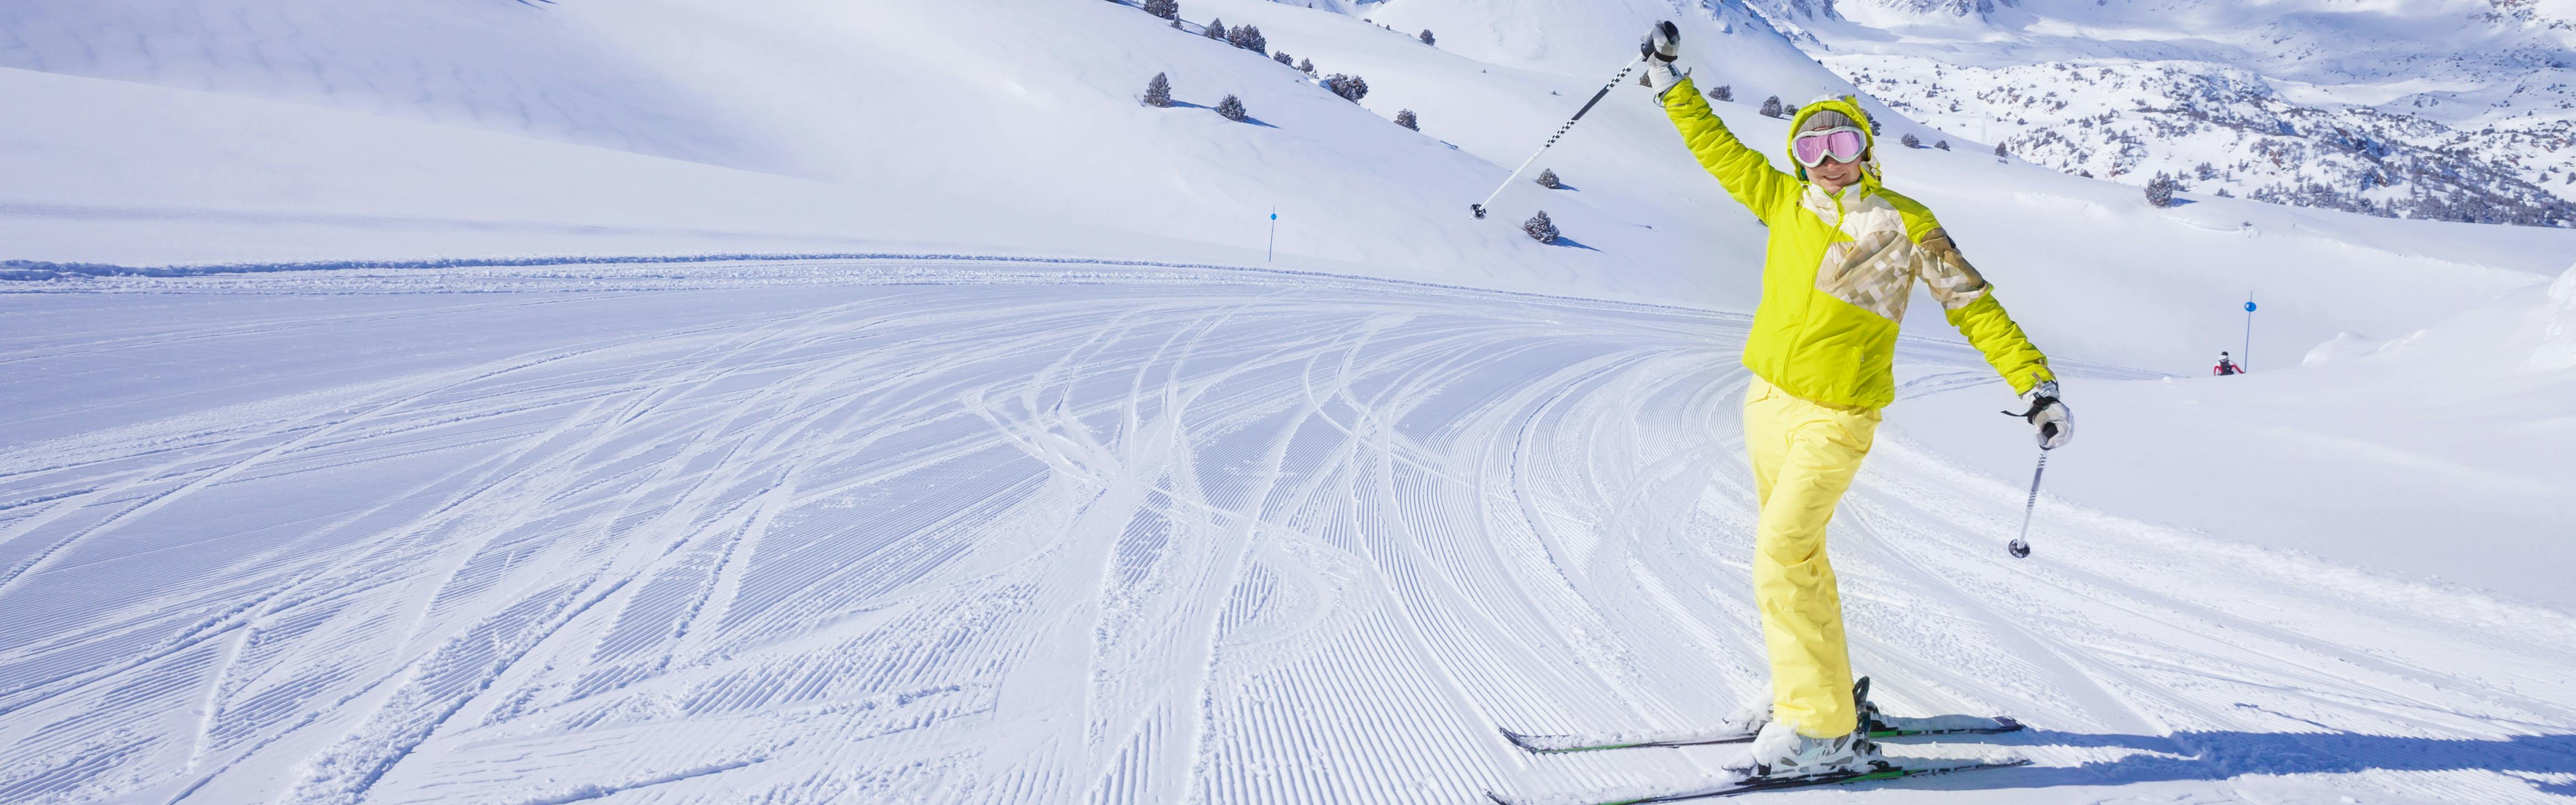 9 Best Snow Gear, Ski Jackets For Women